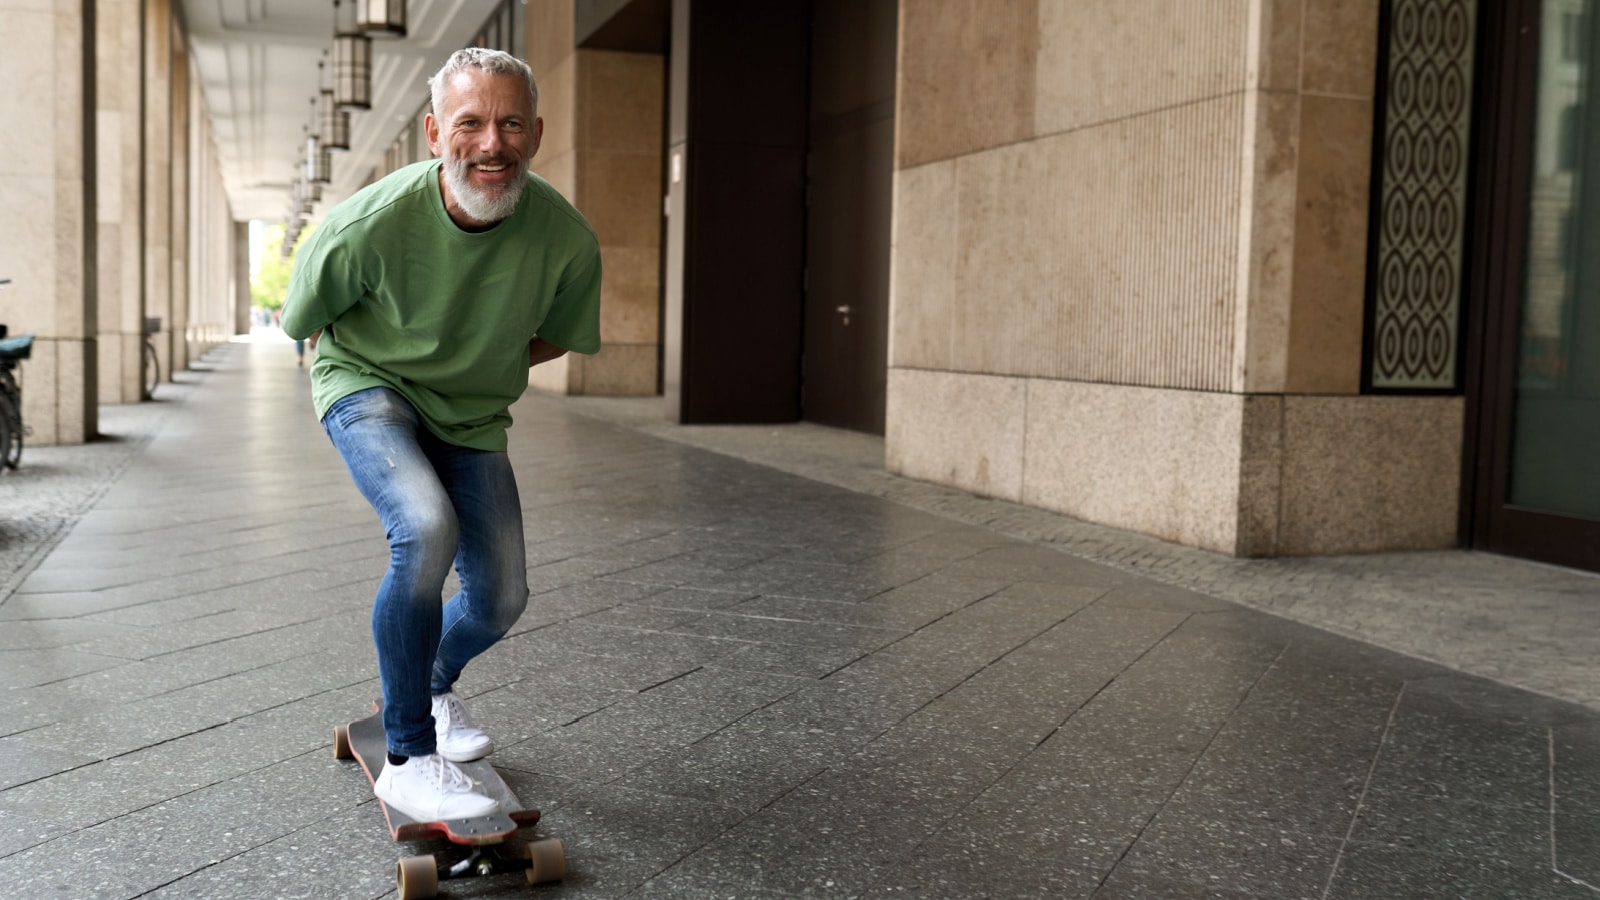 middle age older man on skateboard